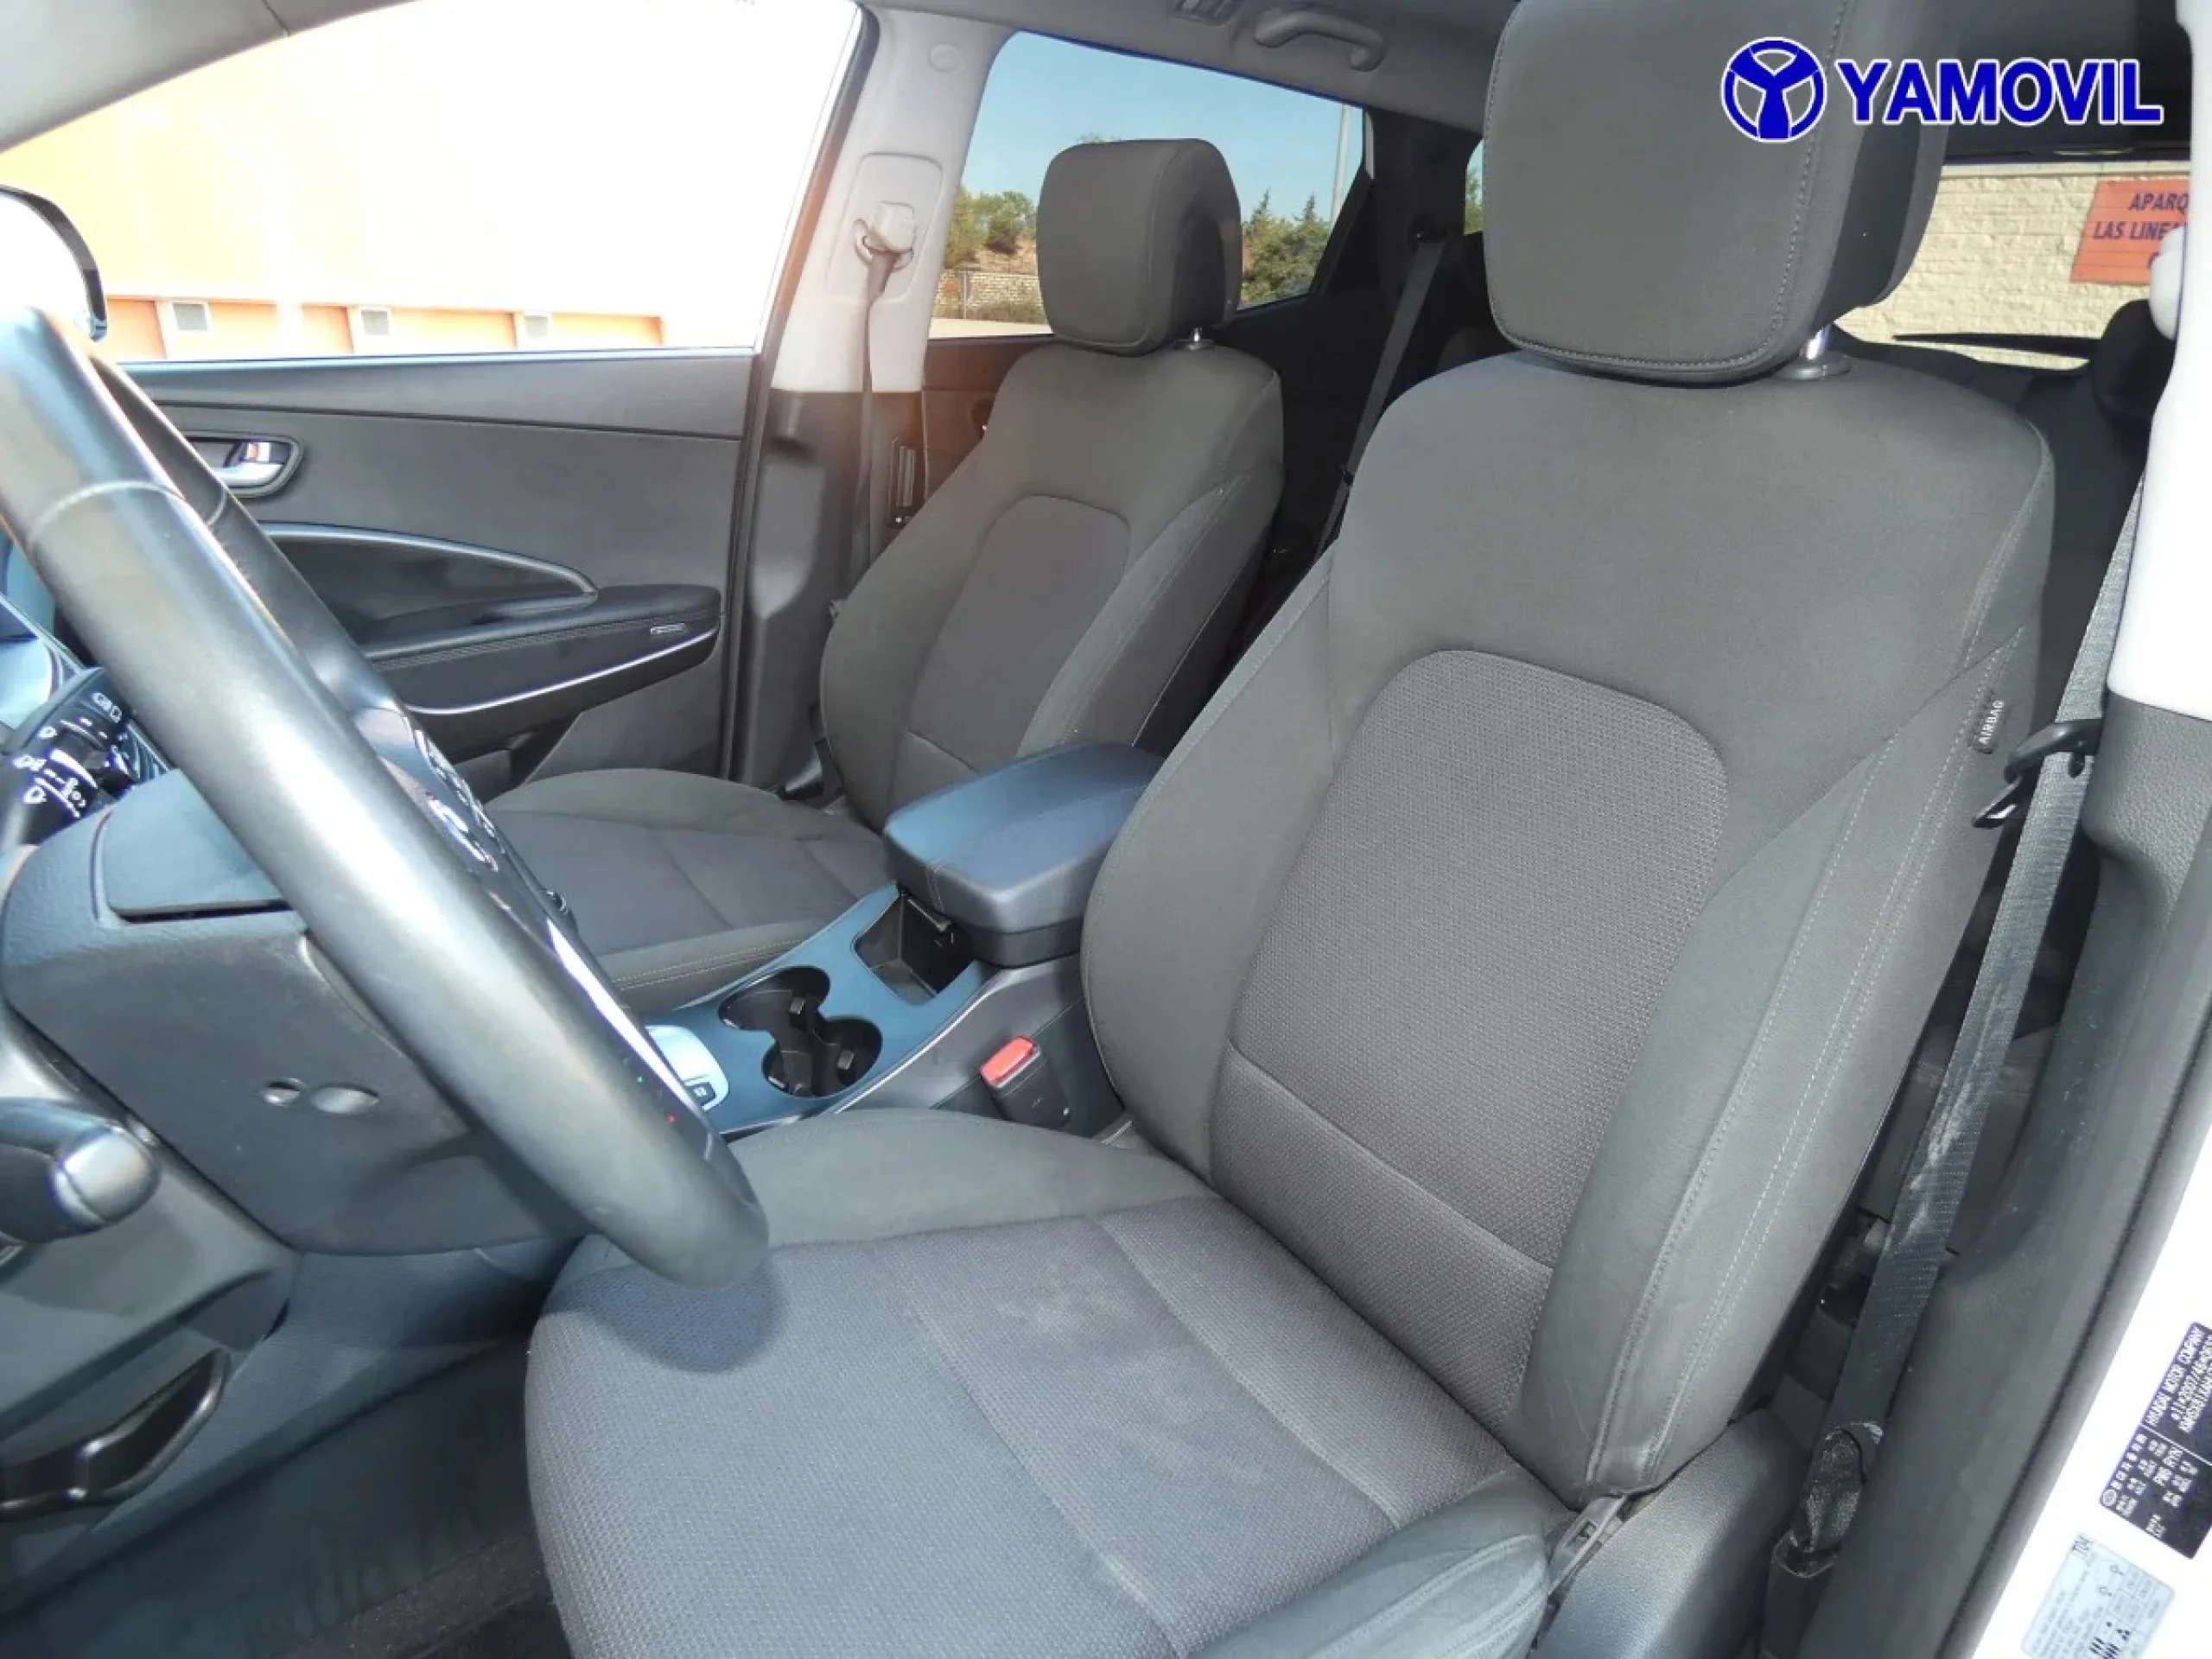 Hyundai Santa Fe 2.2 CRDI 25 Aniversario 4x2 7S 147 kW (200 CV) - Foto 14